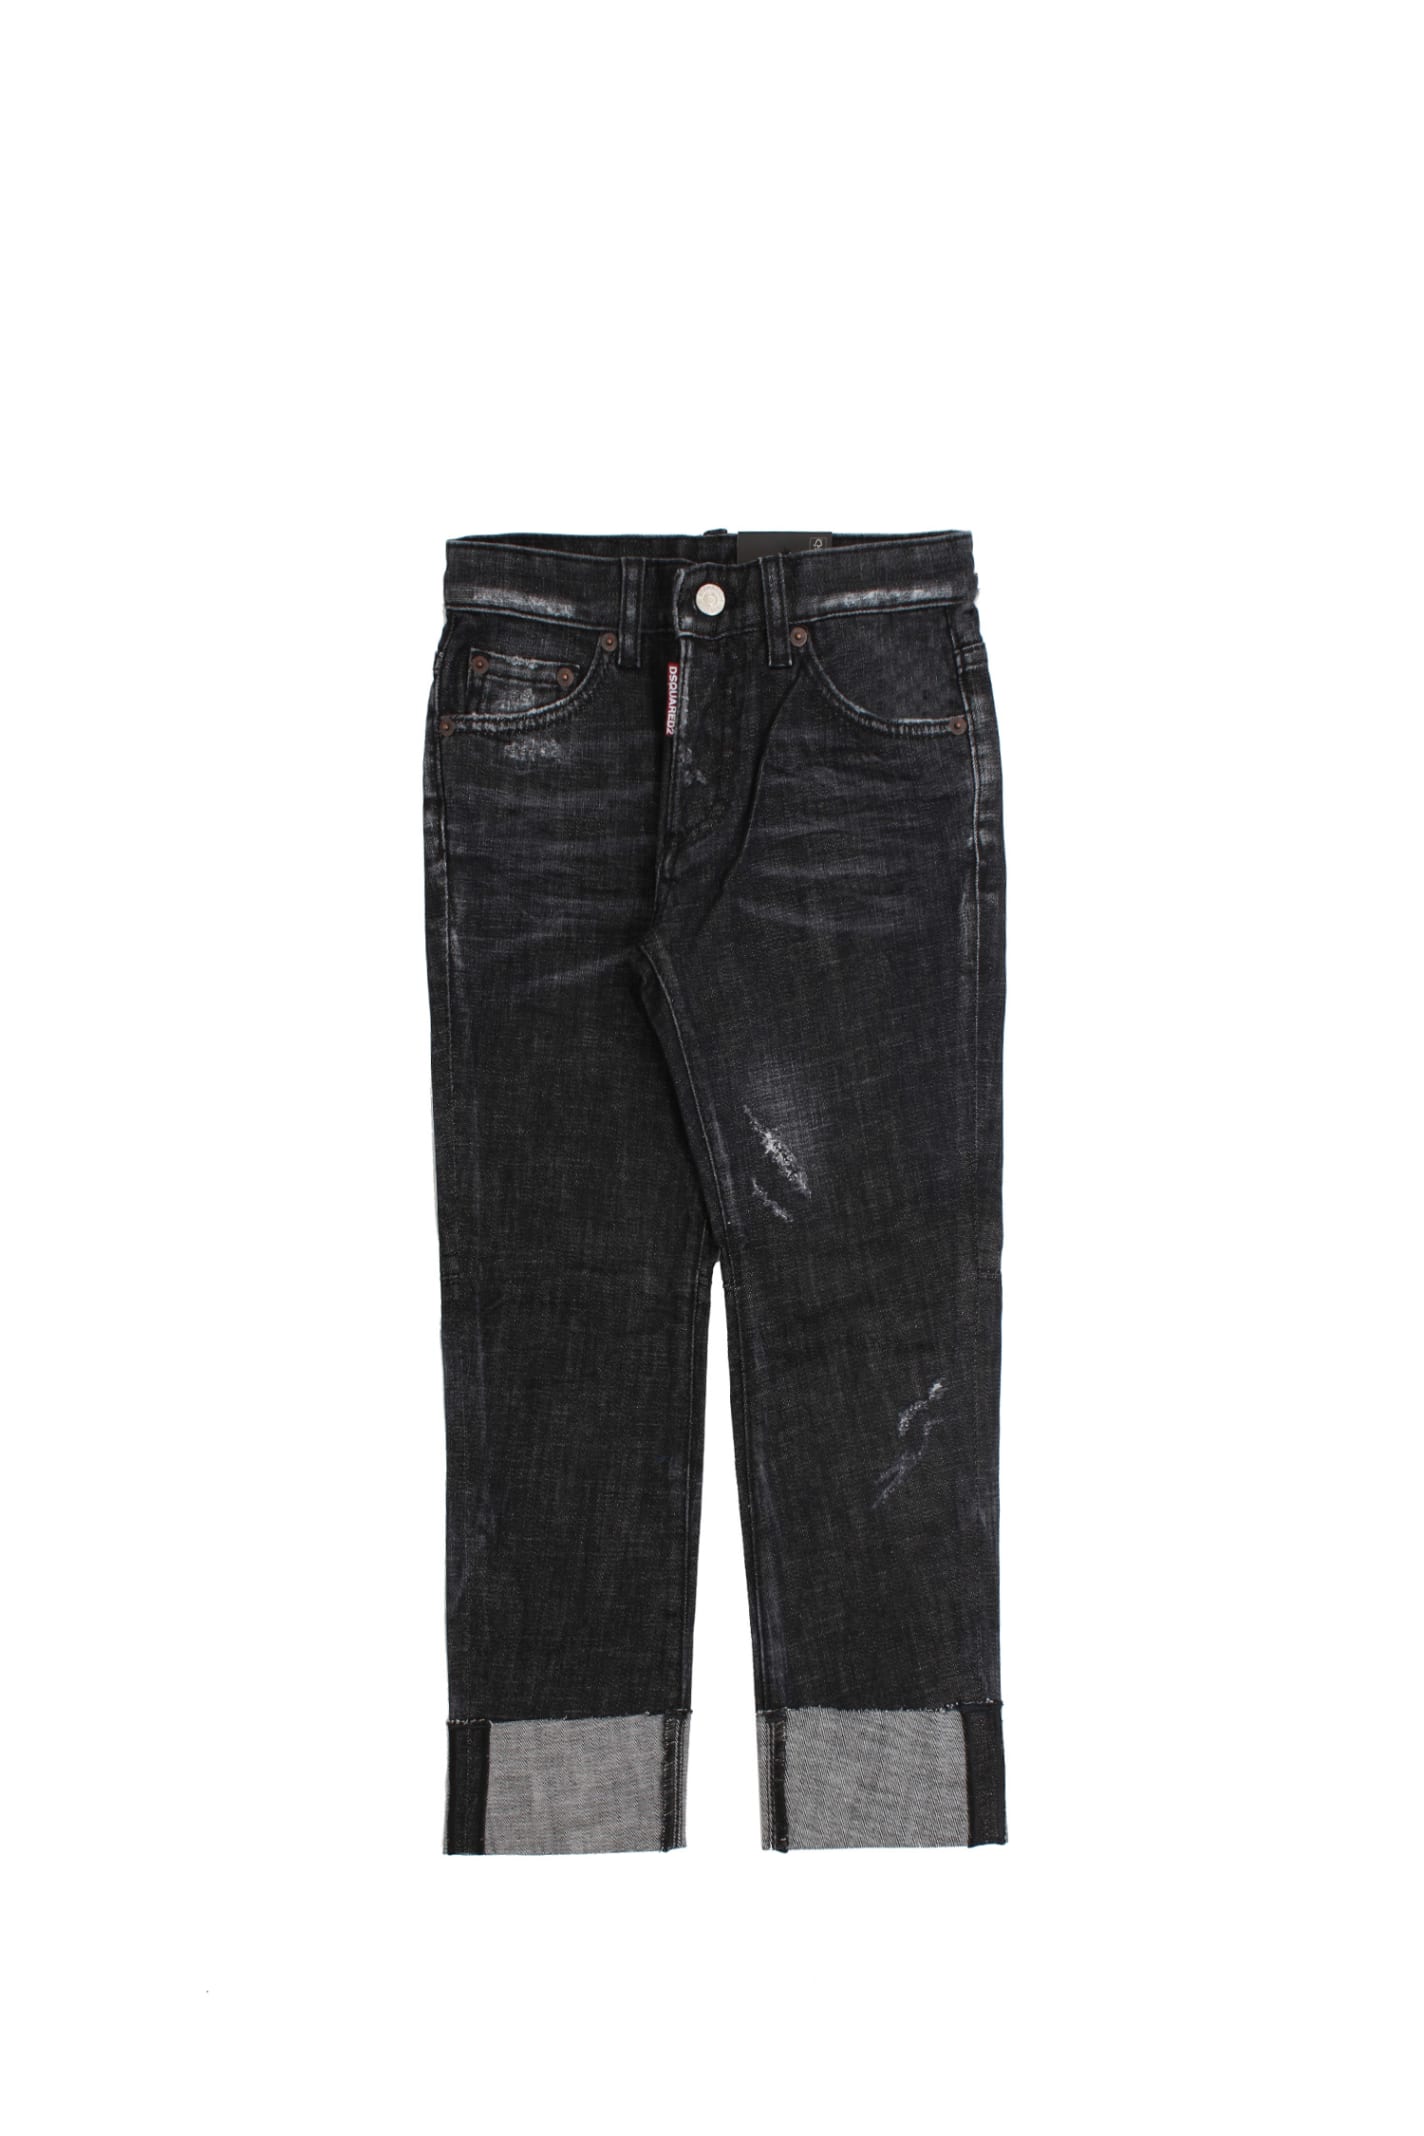 Dsquared2 Cotton Jeans